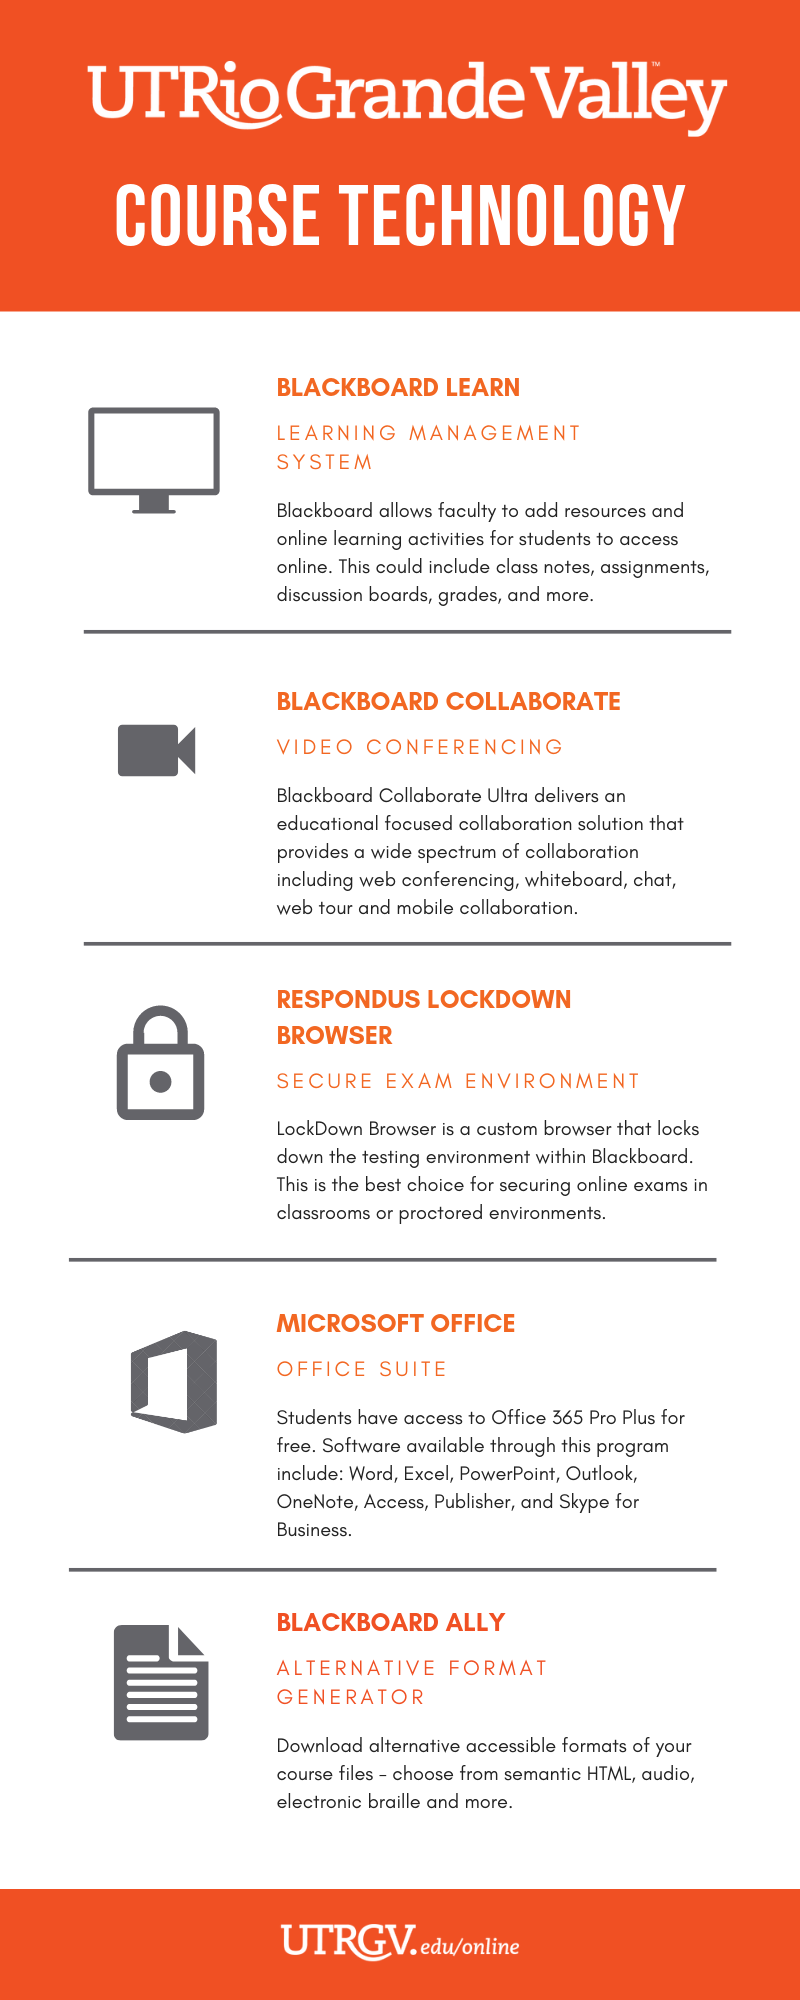 UTRGV Course Technology: Blackboard Learn, Blackboard Collaborate, Respondus Lockdown Browser, Microsoft Office, Blackboard Ally. 